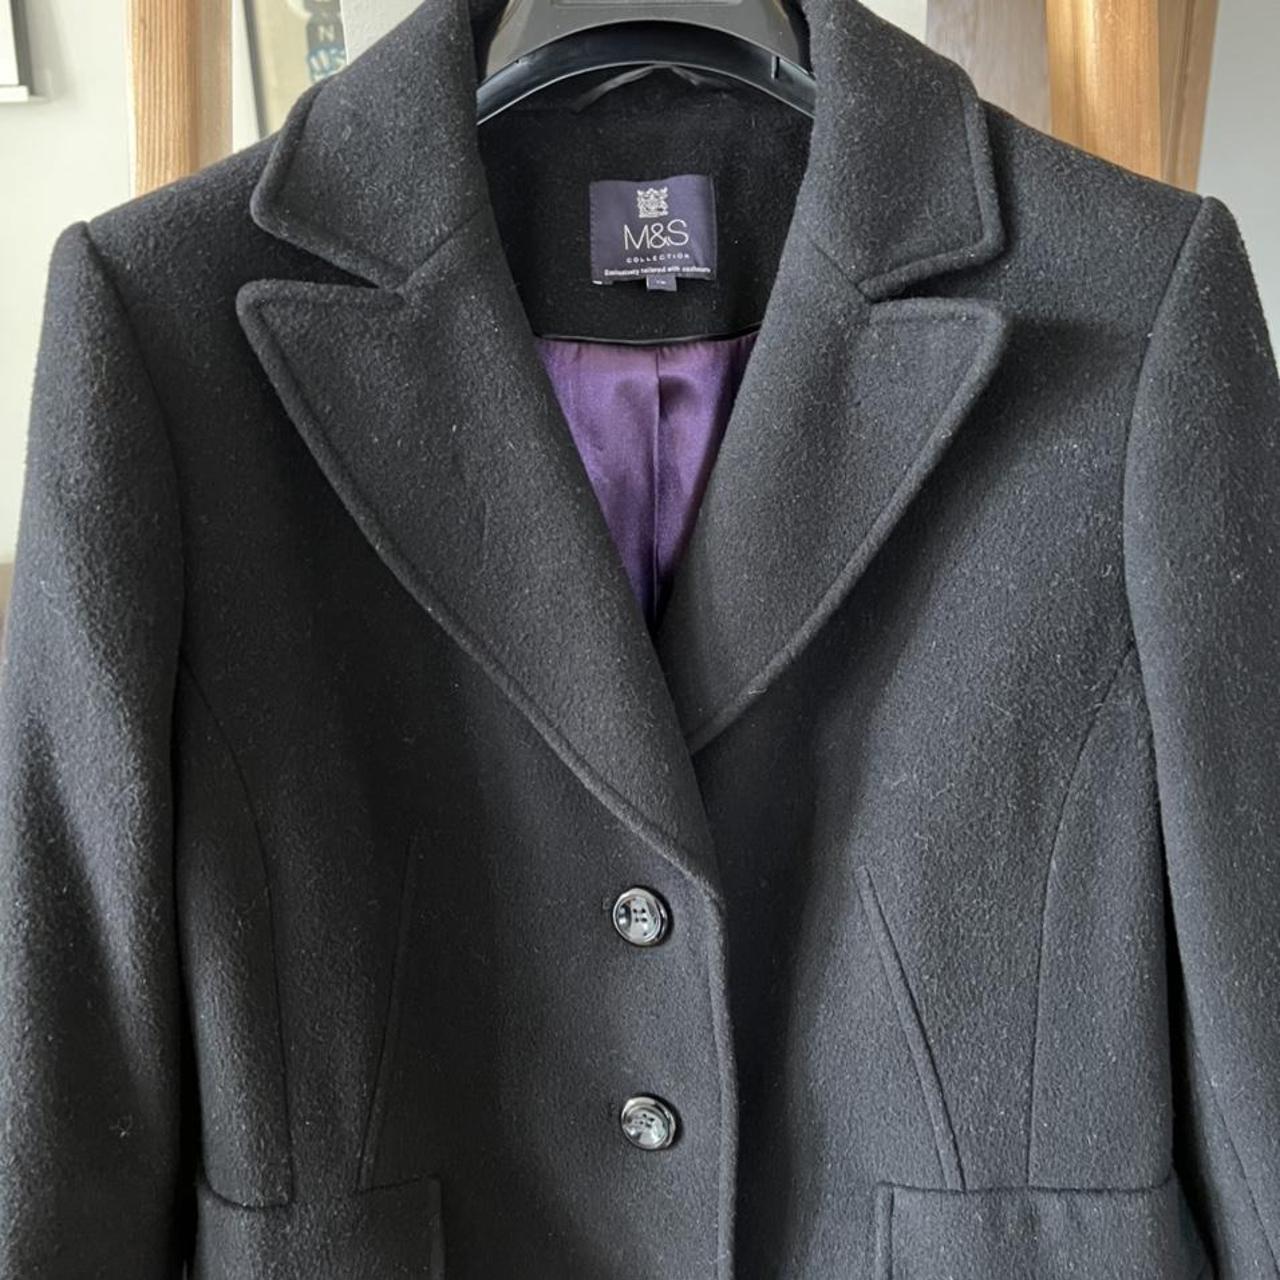 Marks and Spencer cashmere-blend black wool coat.... - Depop